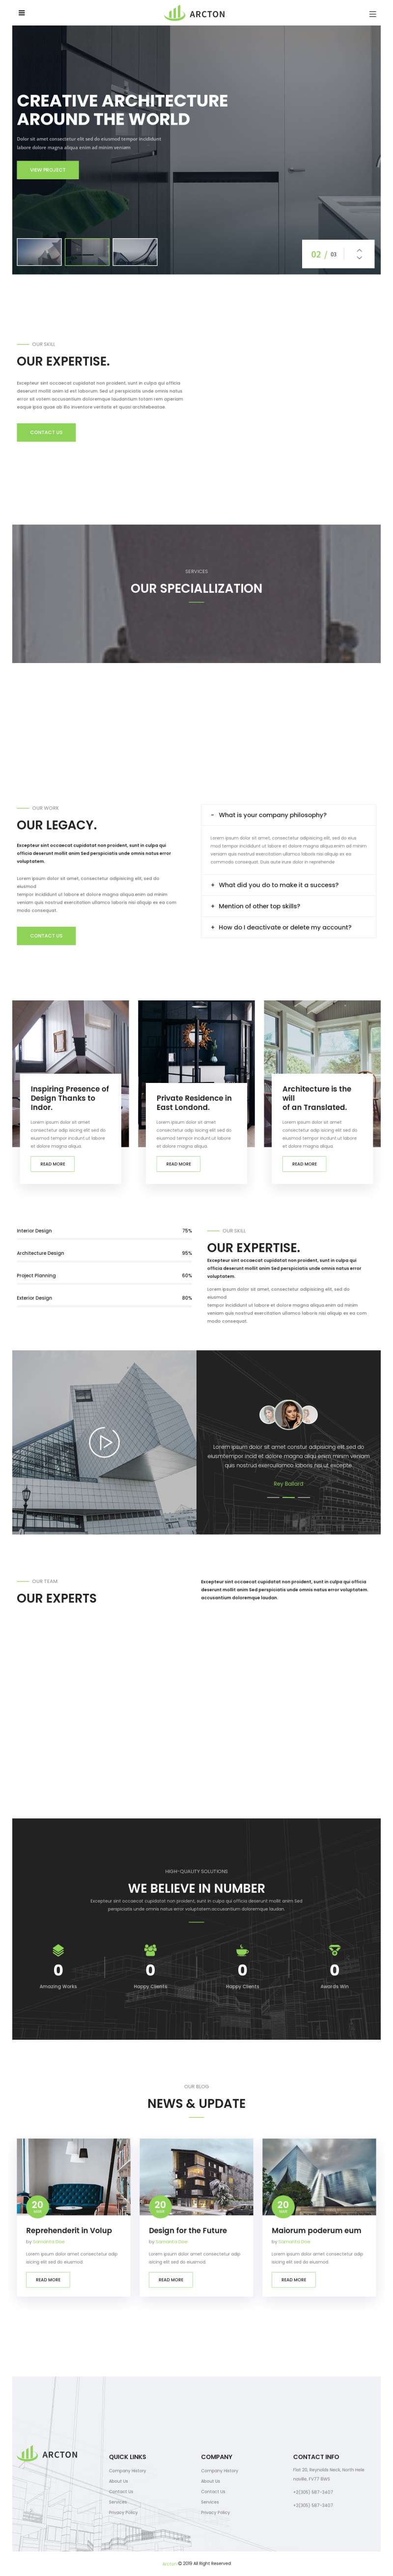 室内建筑设计公司网站HTML模板